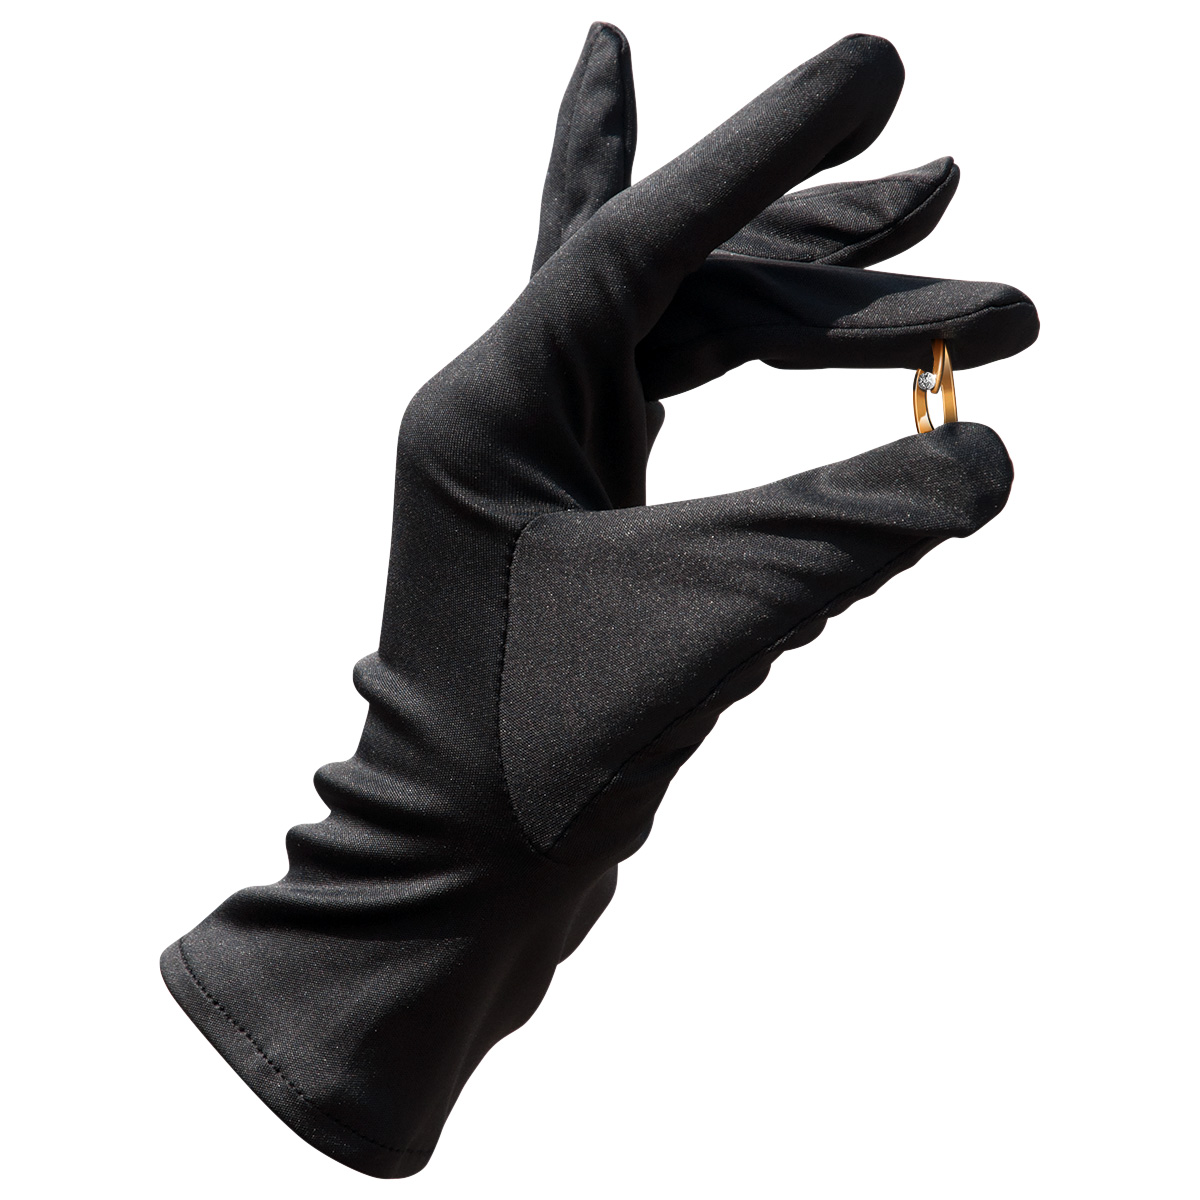 Mikrofaser Handschuh-Paar Haute Couture, schwarz, Größe XL
